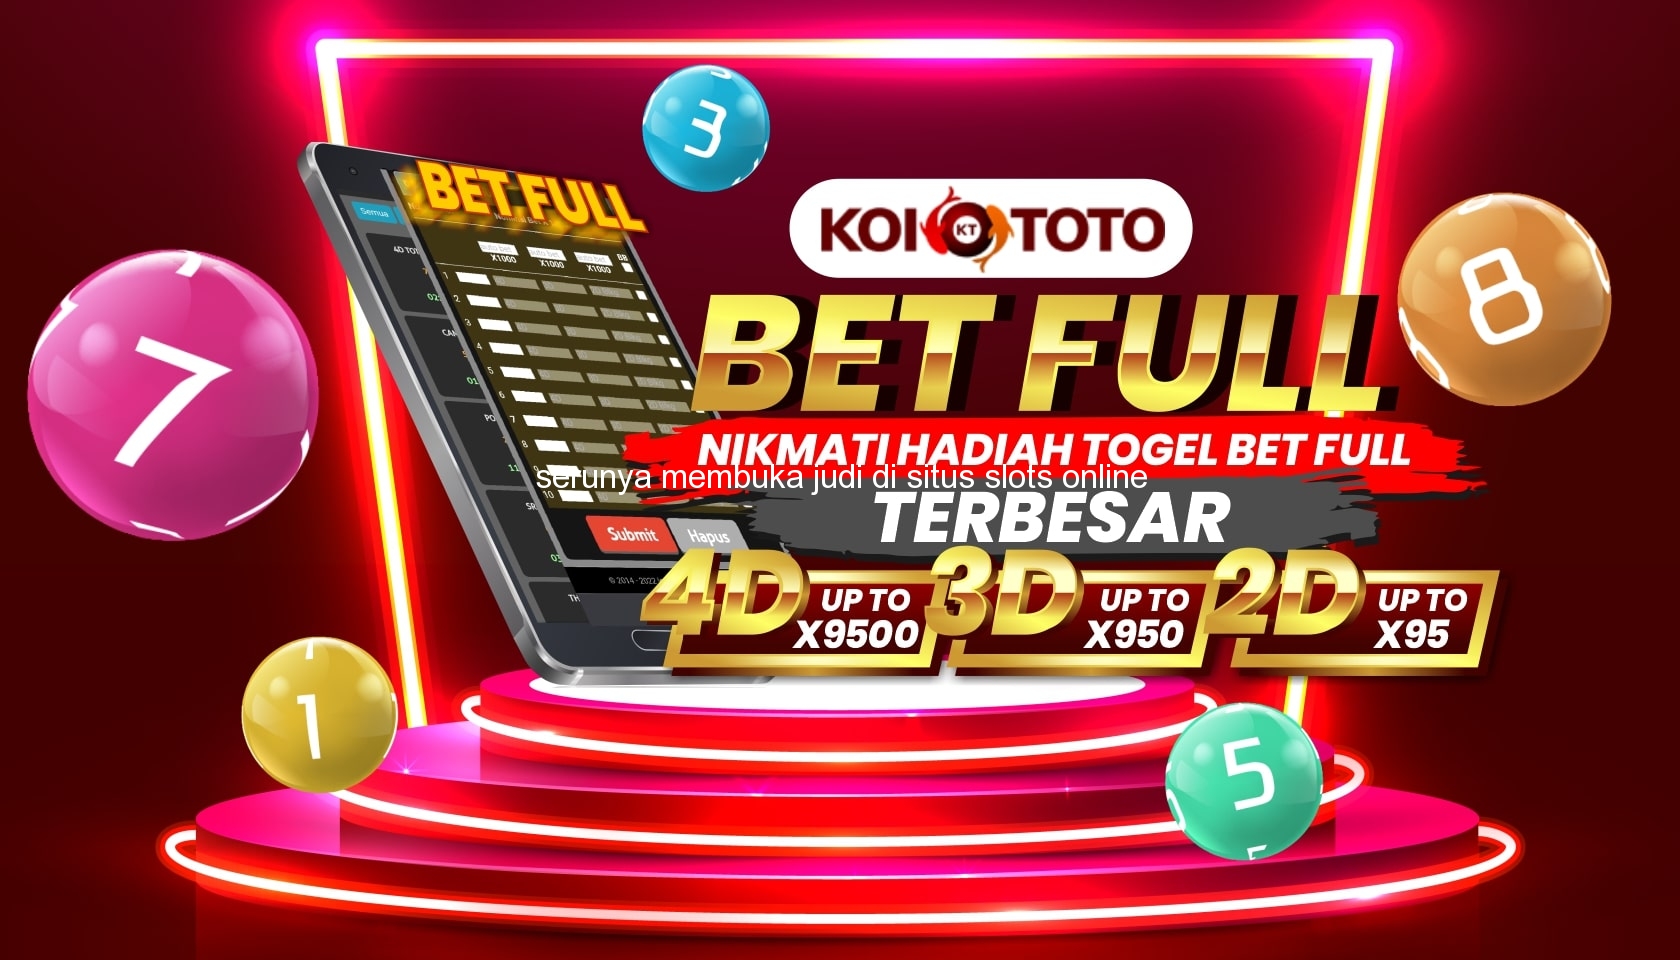 Serunya Membuka Judi di Situs Slots Online Terbaik di Tanah Pinem – KOITOTO